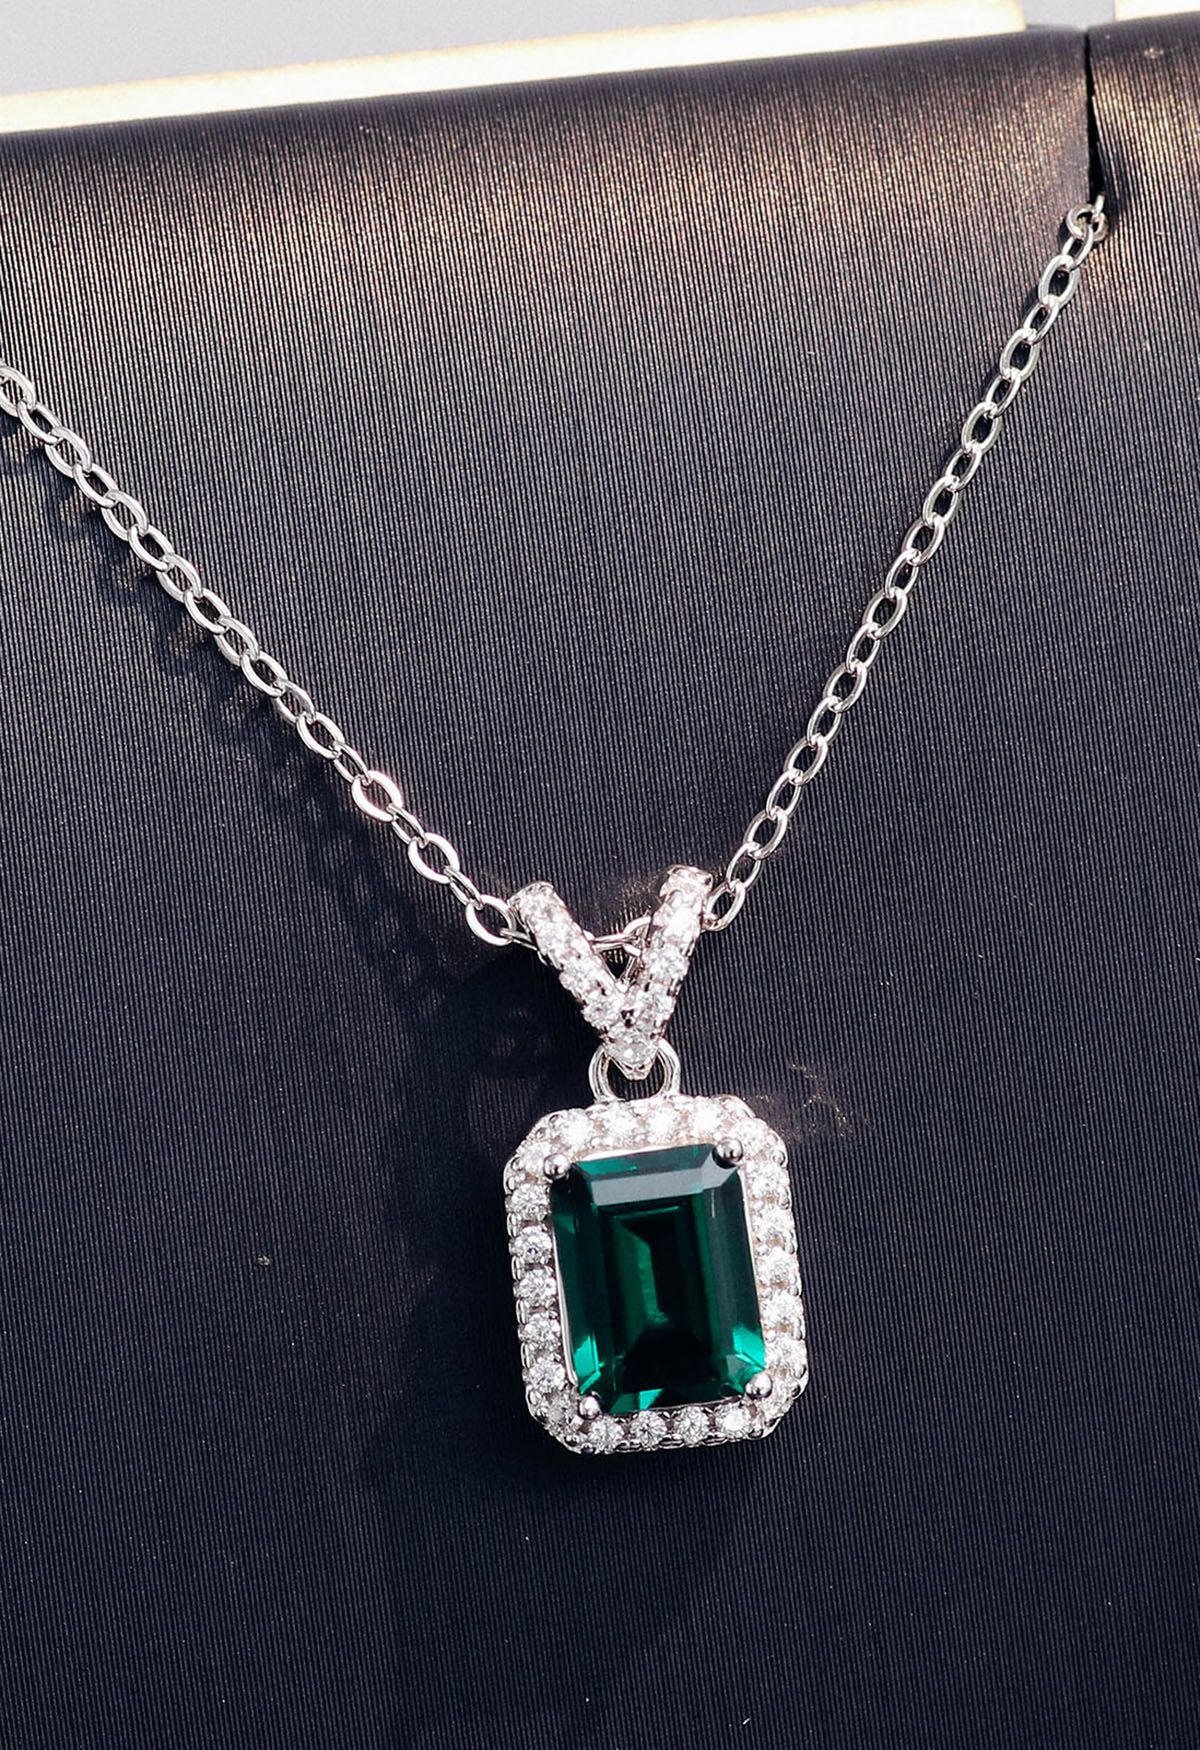 Collar de gemas de diamantes y esmeraldas en forma de V